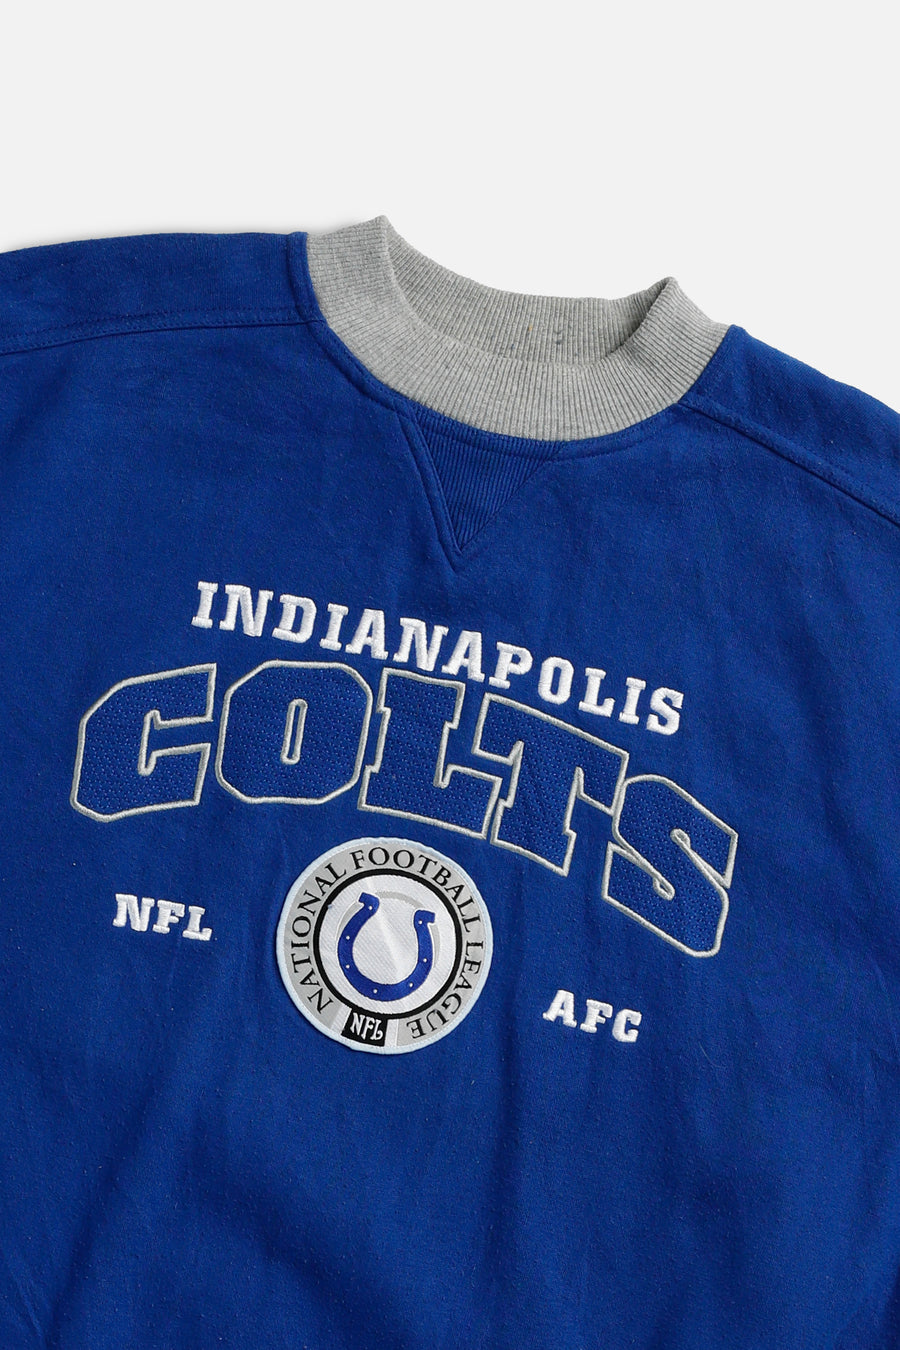 Vintage Indianapolis Colts NFL Sweatshirt - L